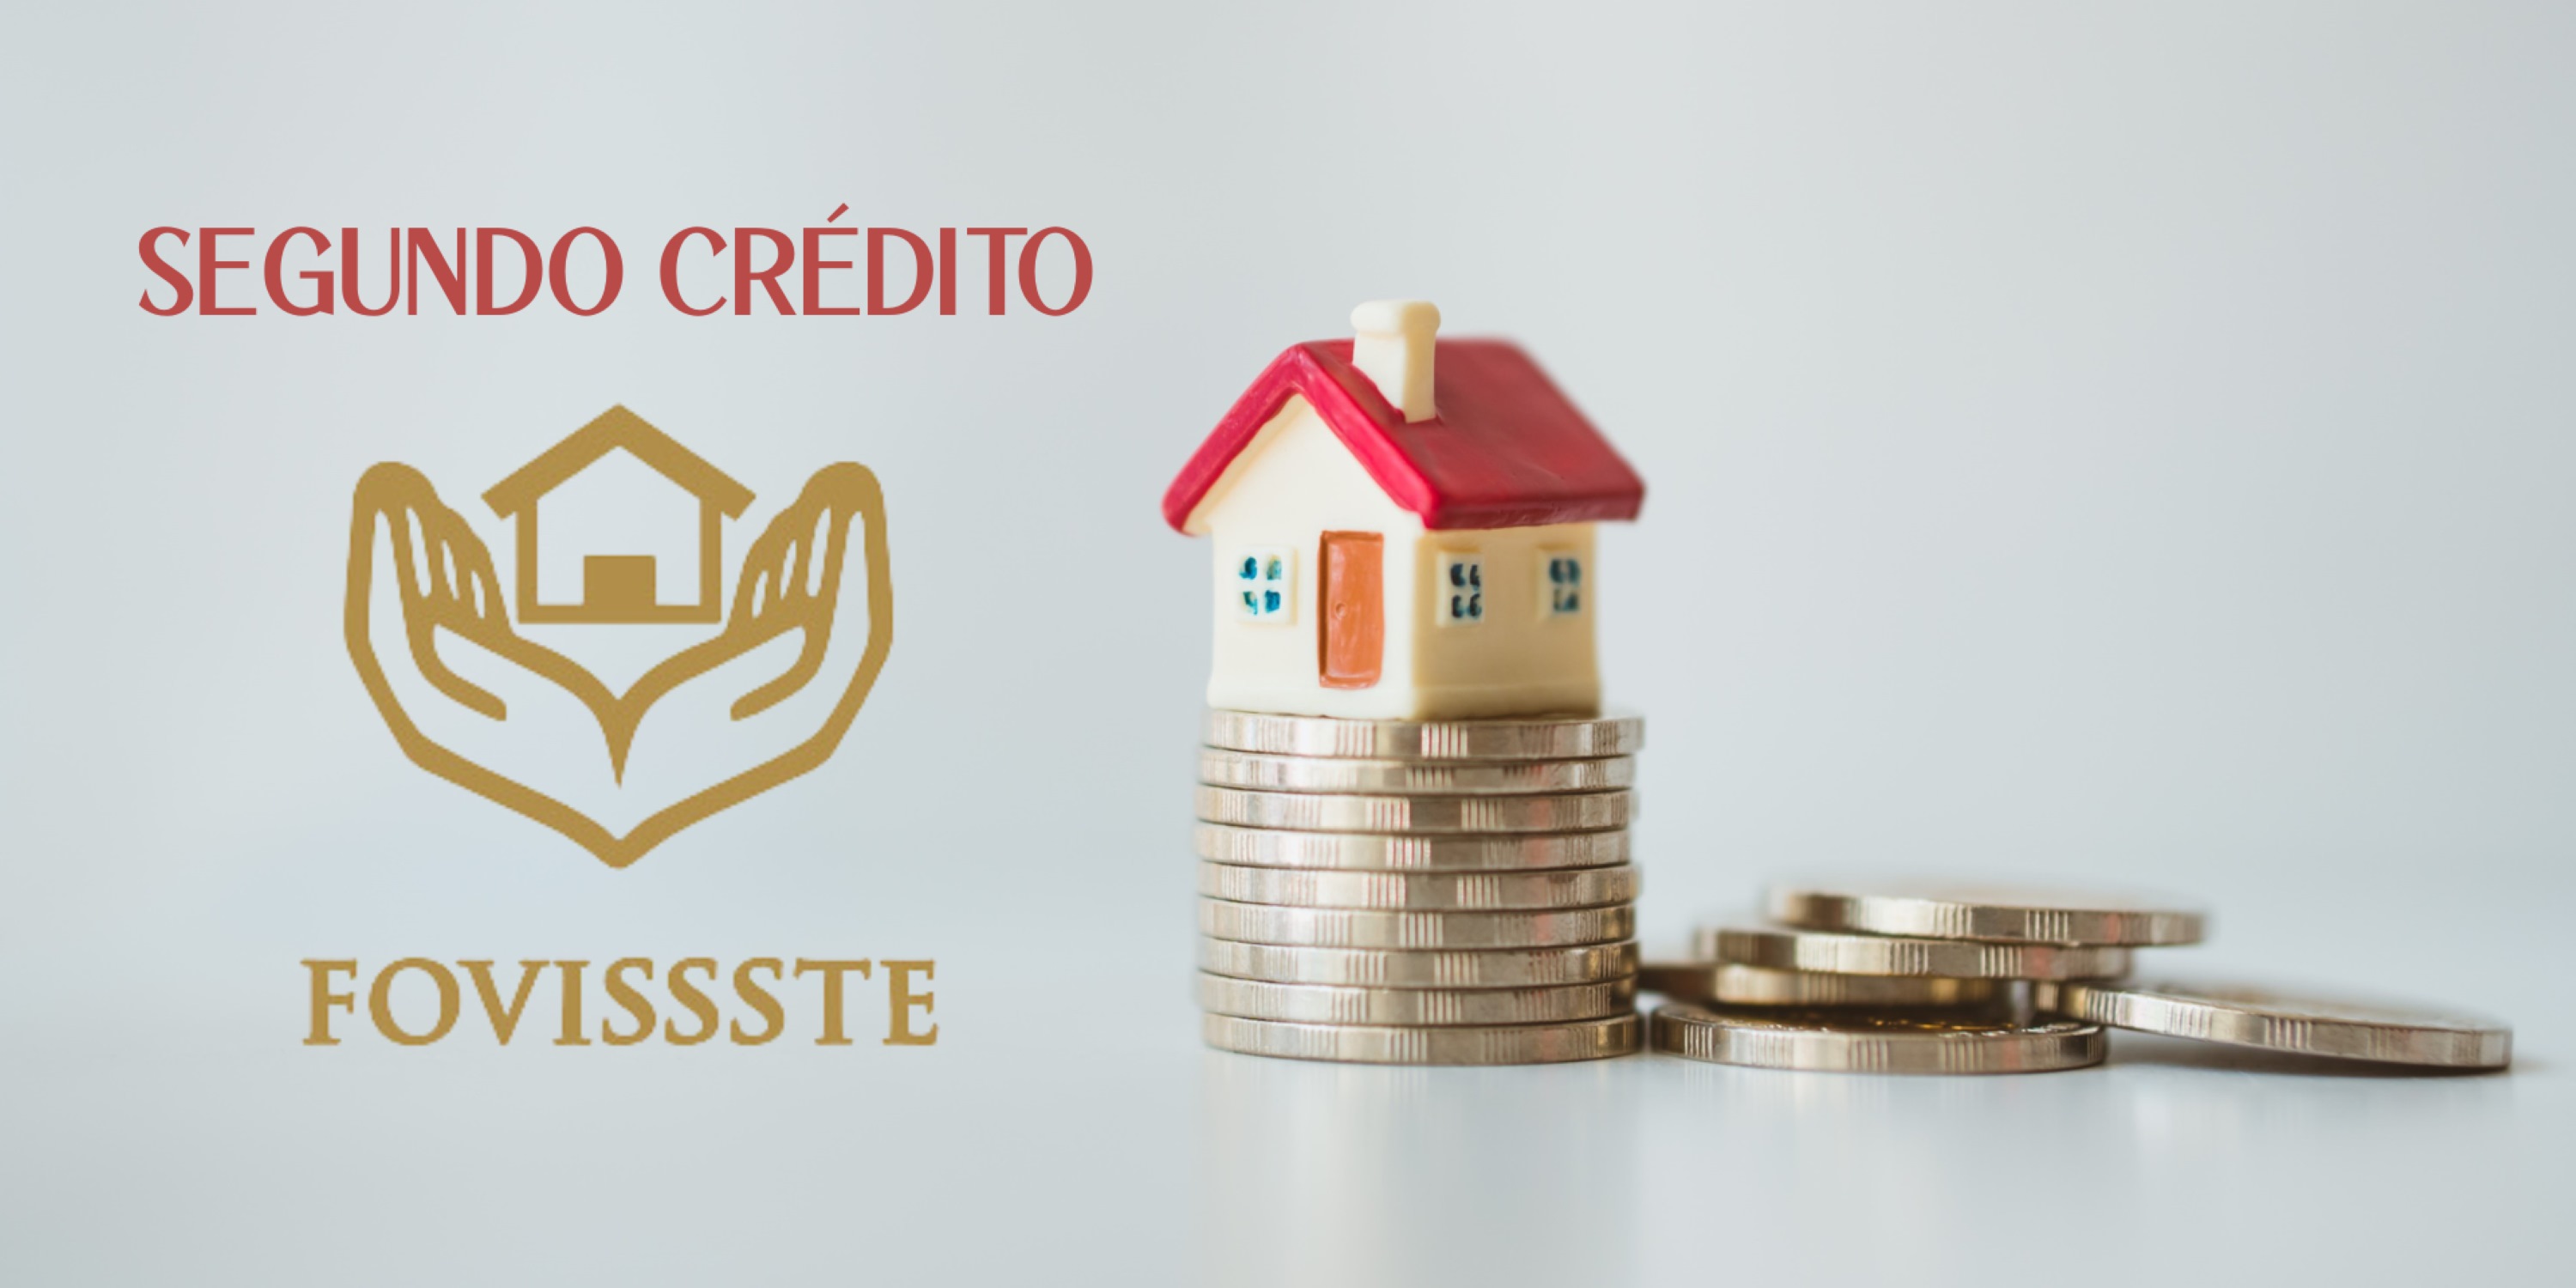 Segundo Crédito FOVISSSTE, requisitos para comprar casa.